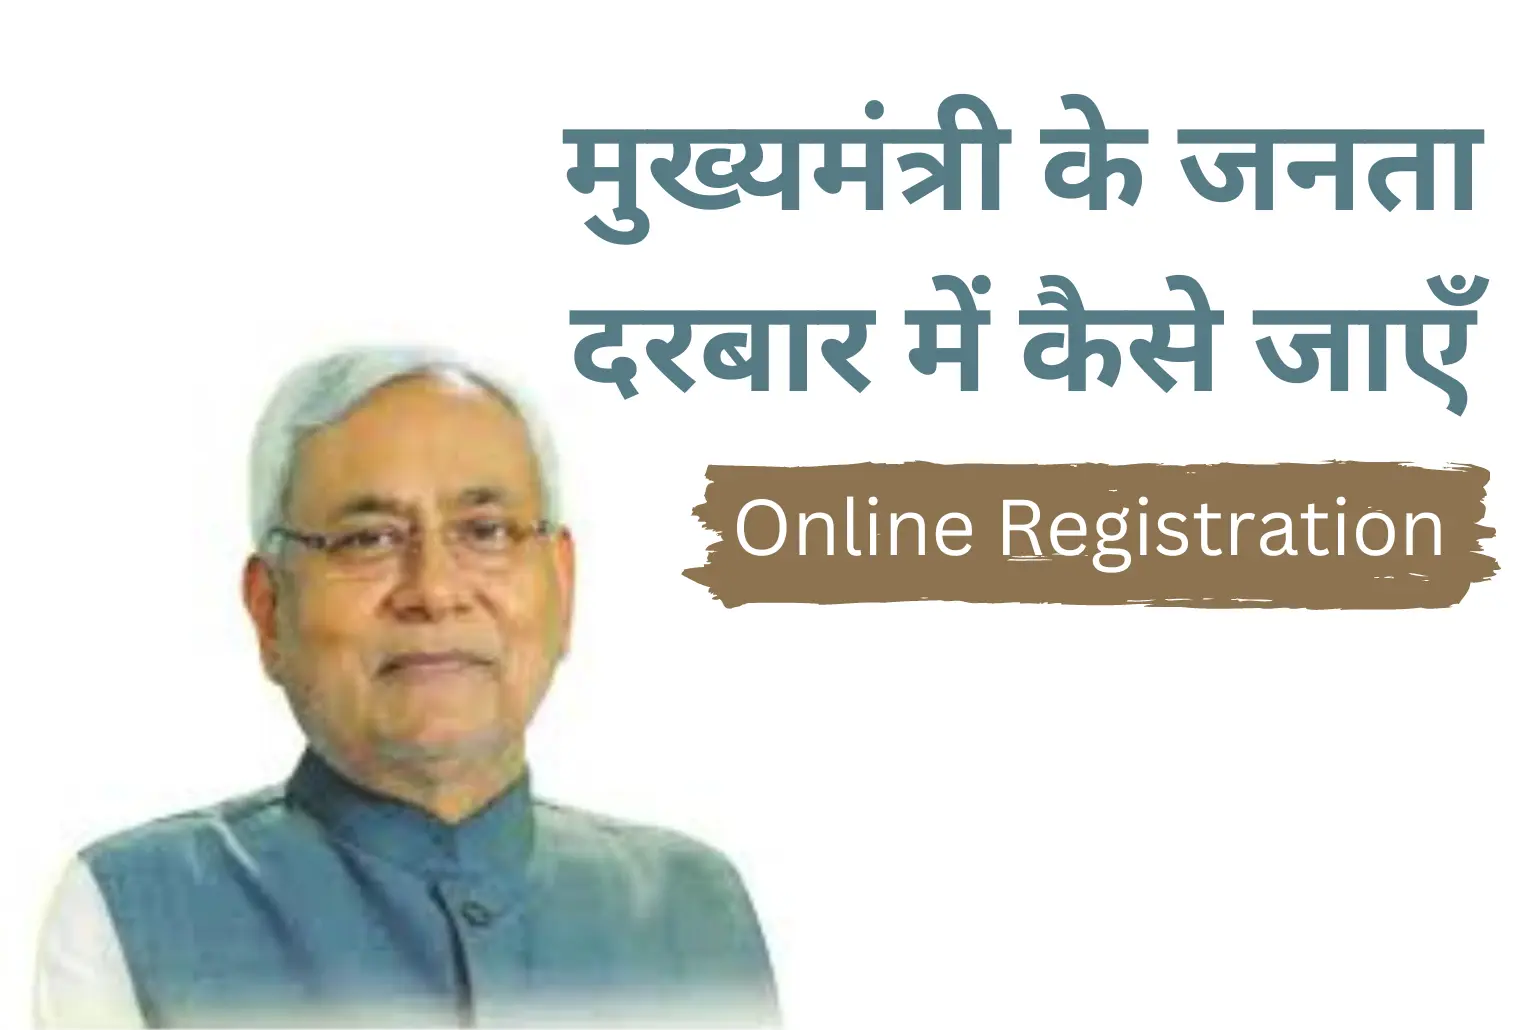 Janta Darbar Bihar Online Registration